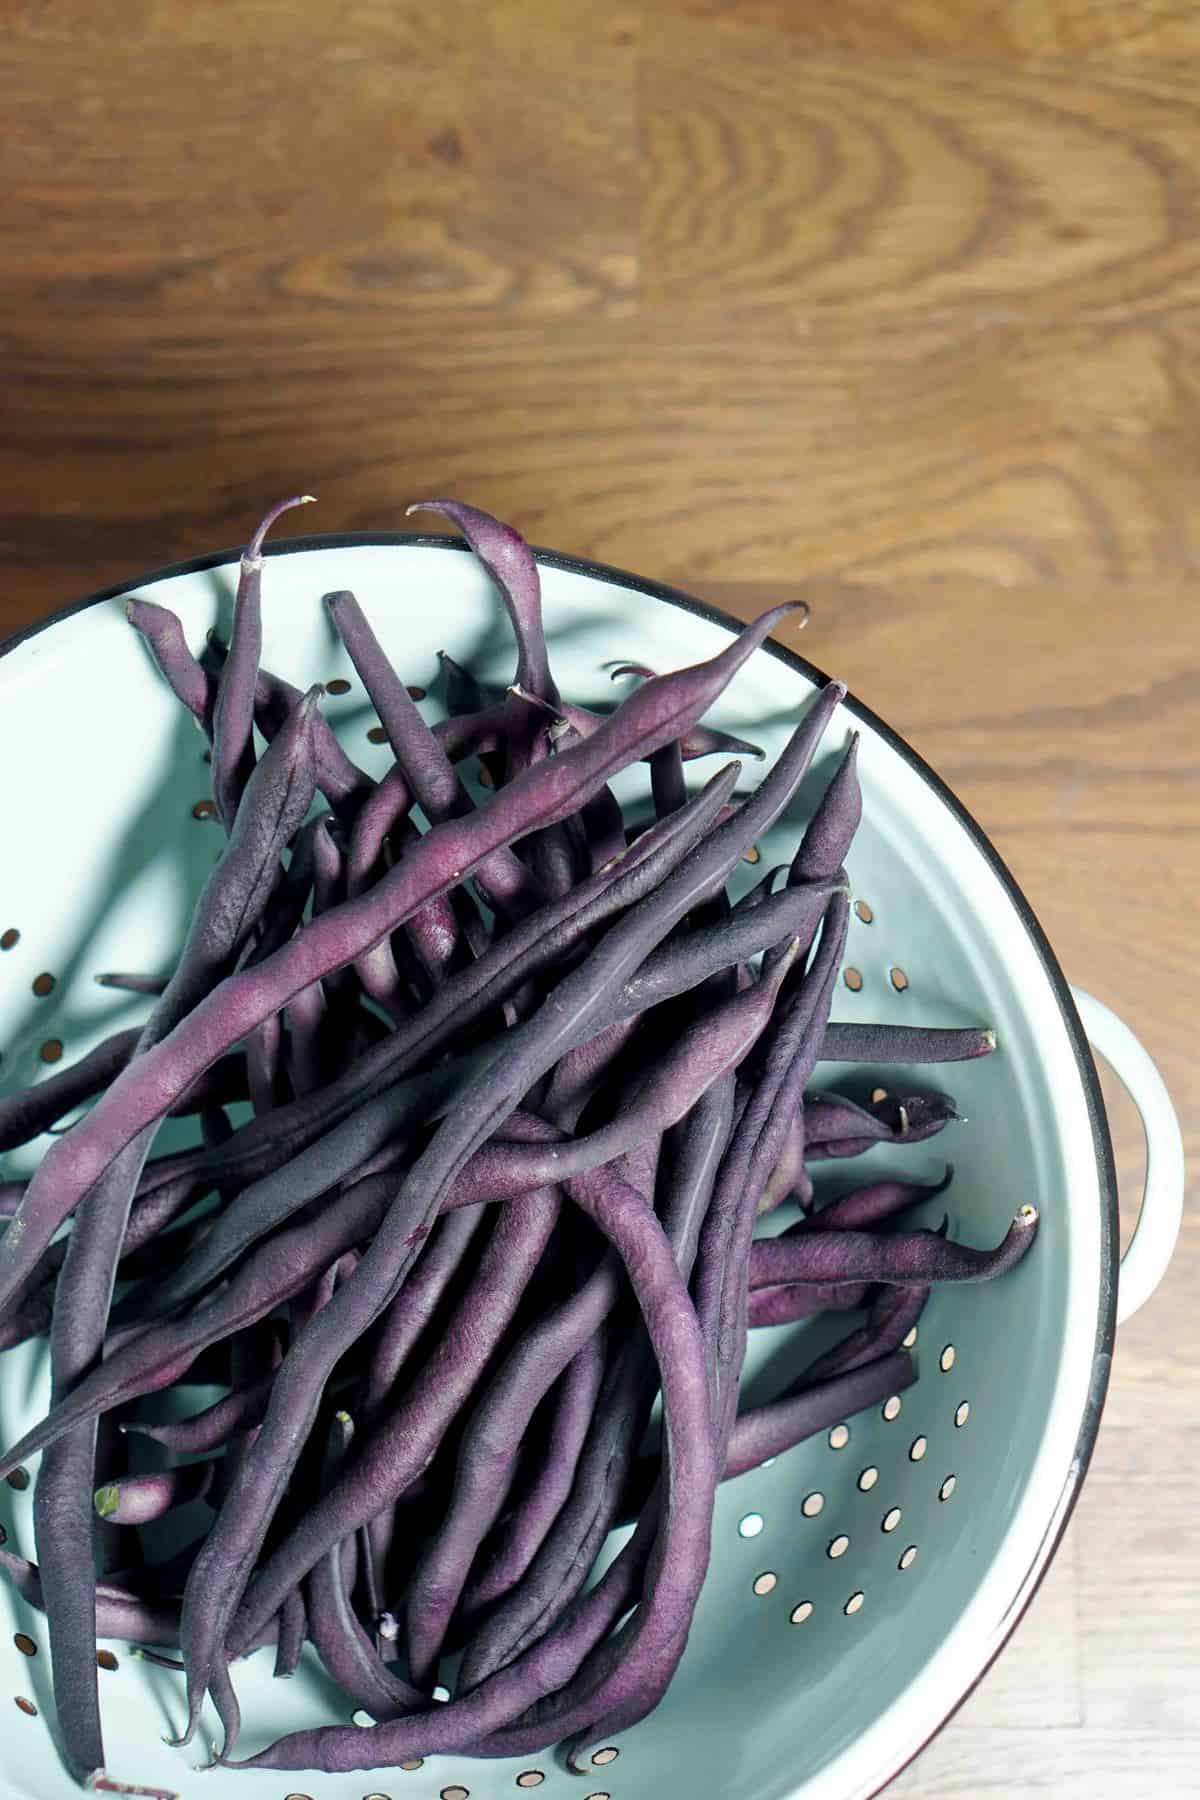 purple hyacinth beans in vintage colander